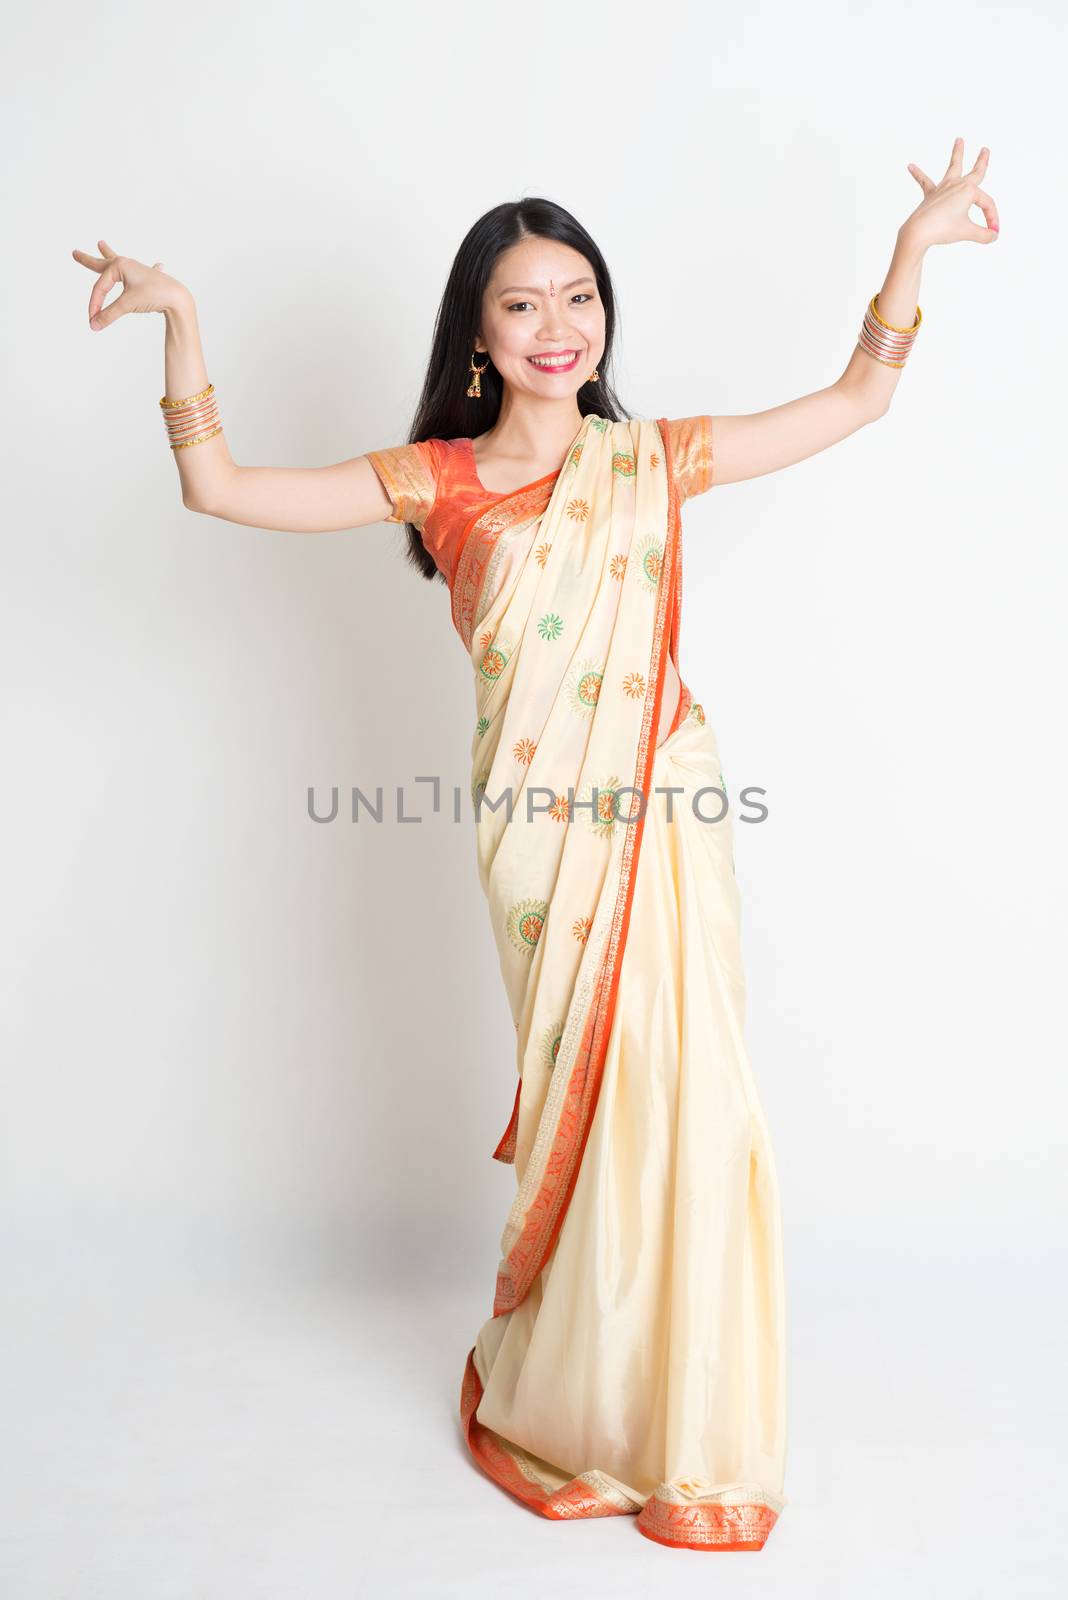 Girl in Indian sari dress dancing by szefei